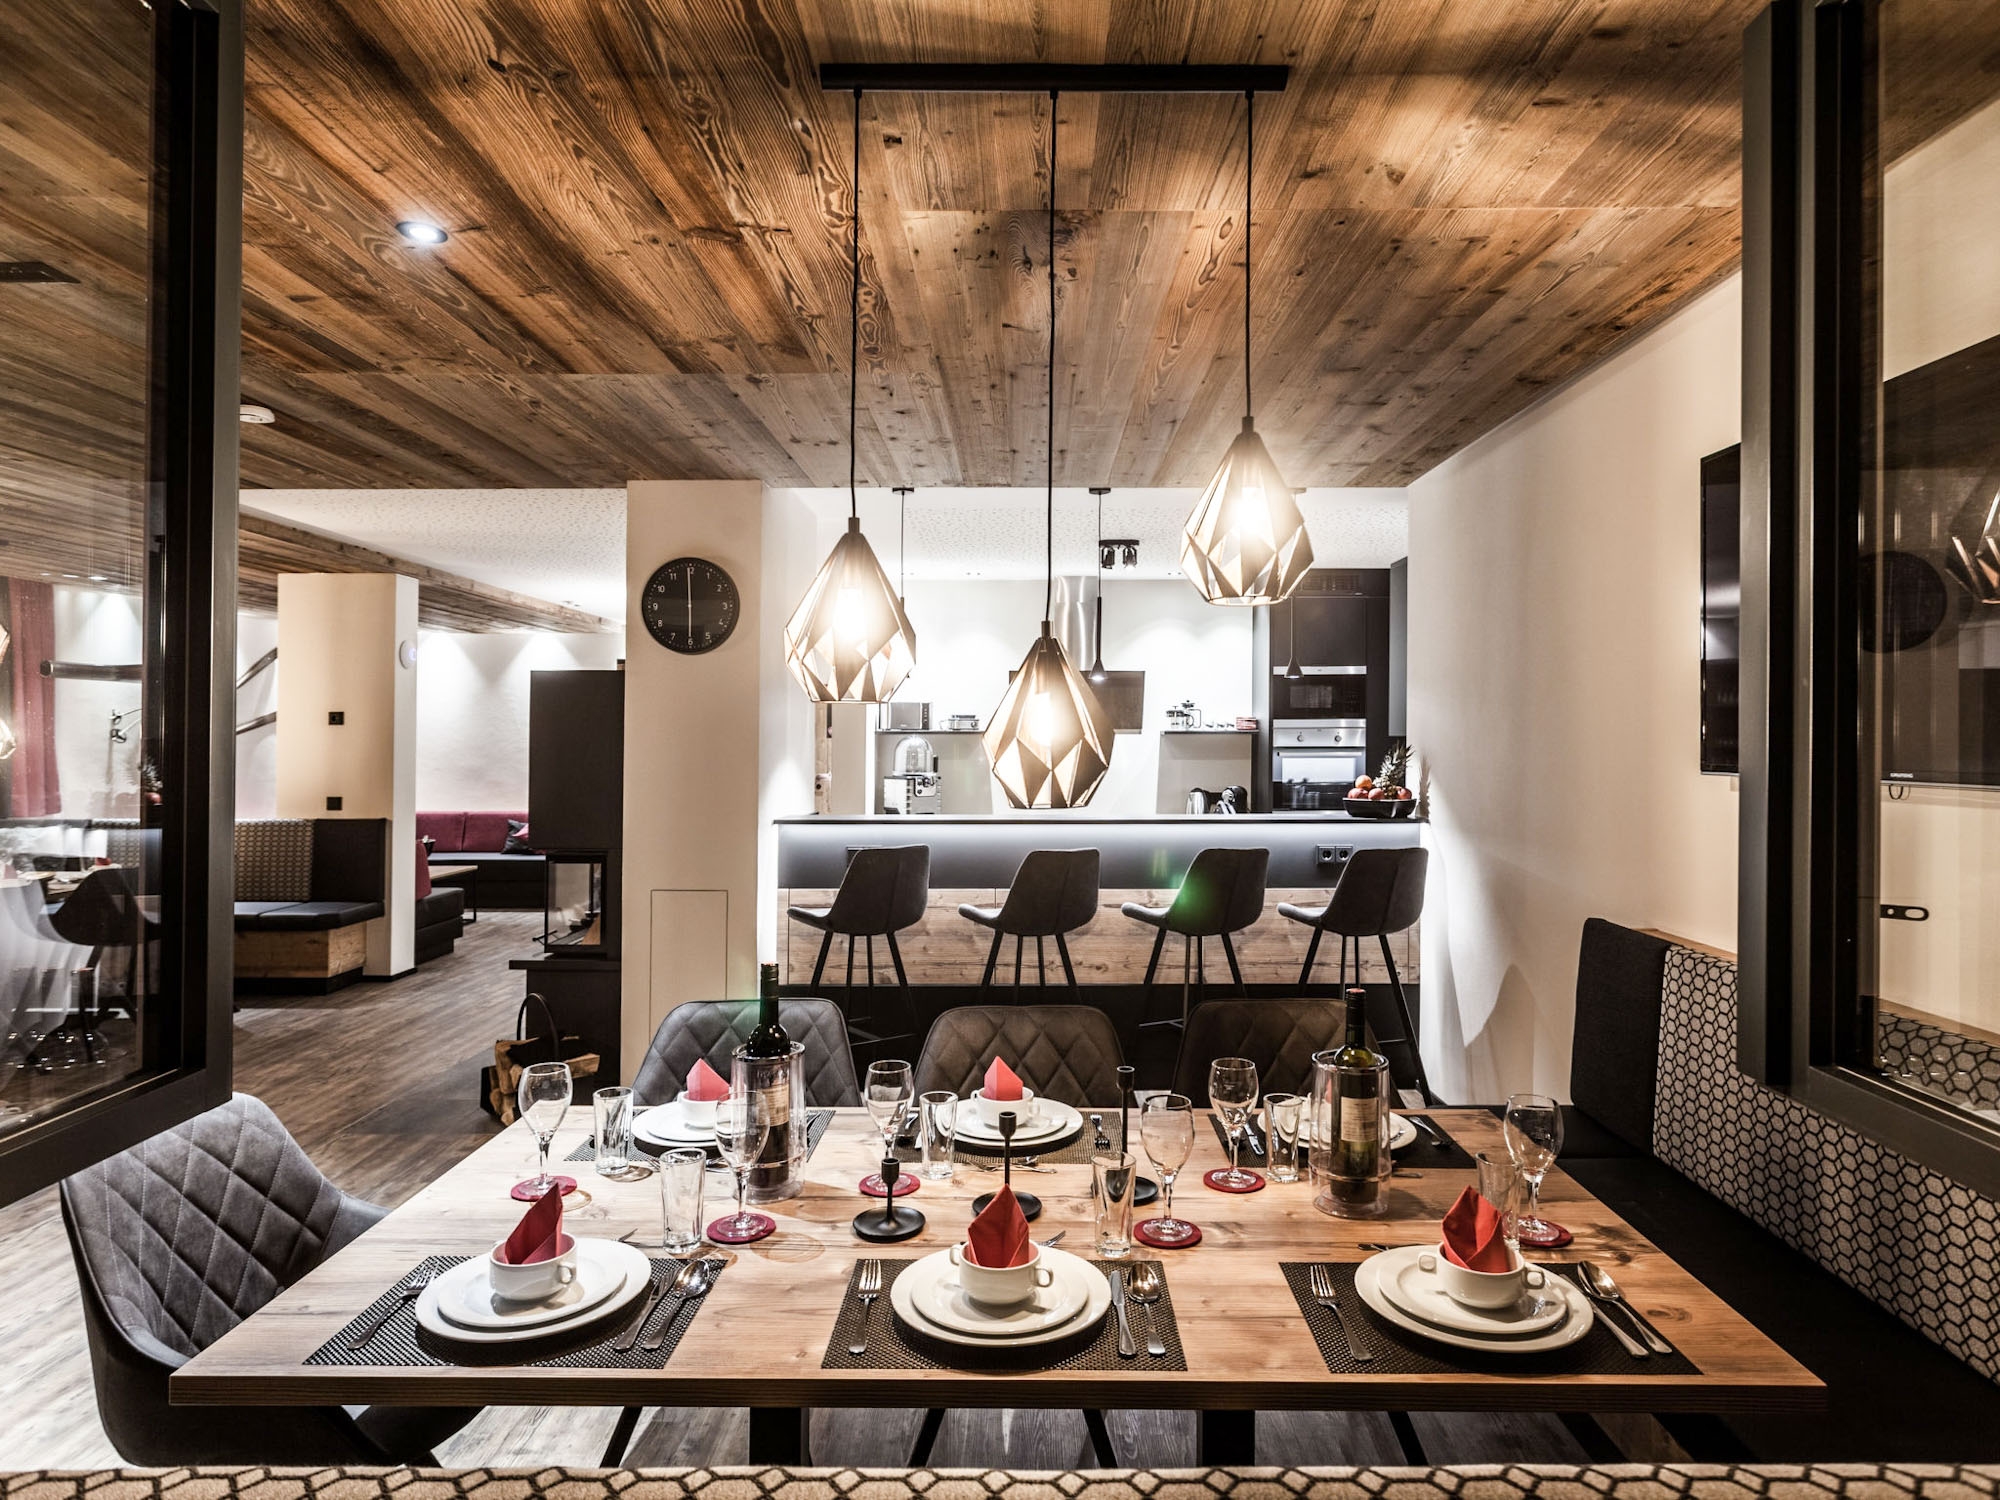 Luxus-Chalets im Montafon: Wohnbereich mit Küche (Beispiel)